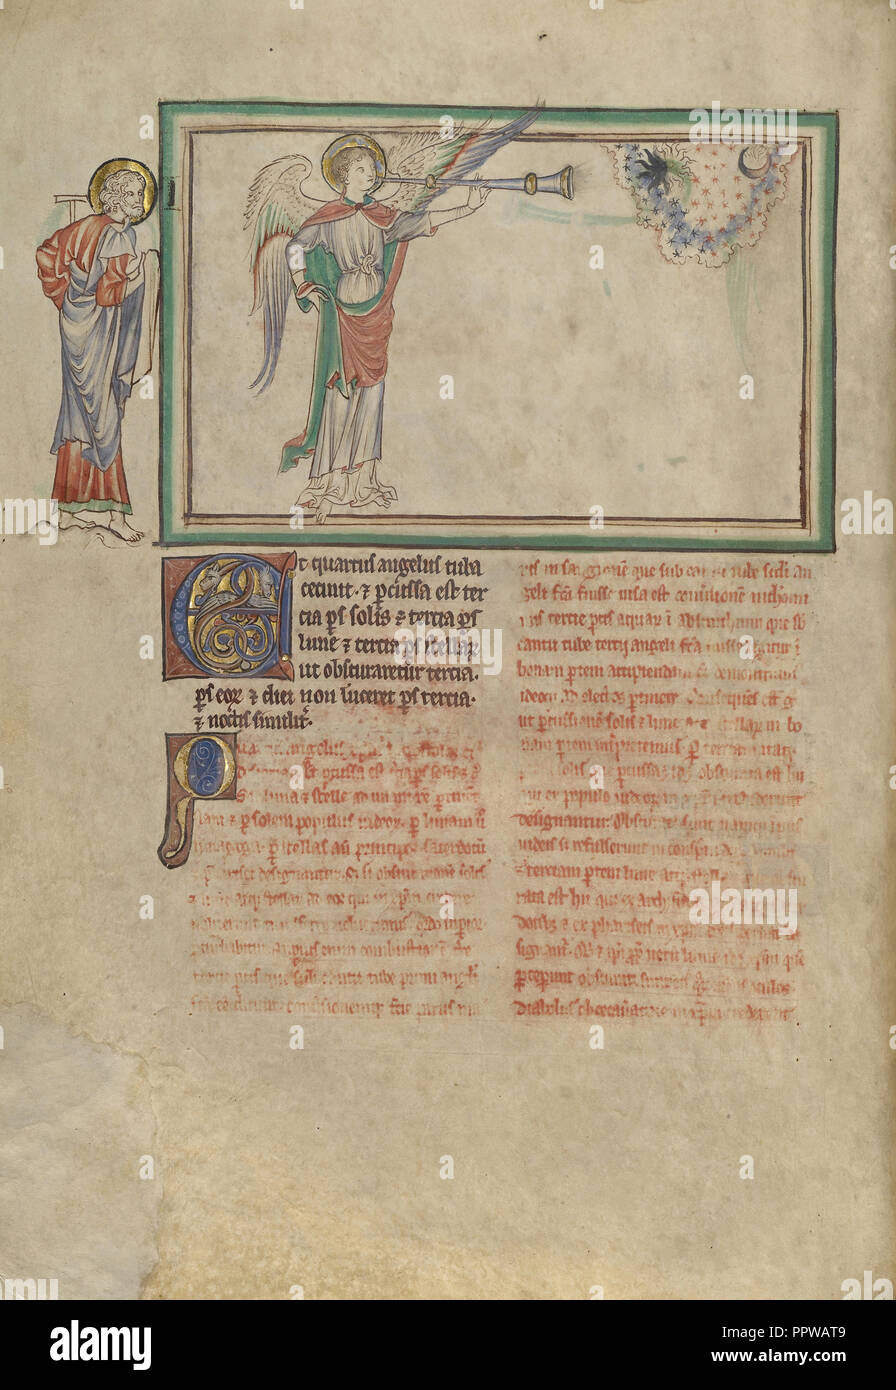 La quarta tromba: l'oscuramento di un terzo dei corpi celesti; Londra, probabilmente, Inghilterra; circa 1255 - 1260; tempera Foto Stock